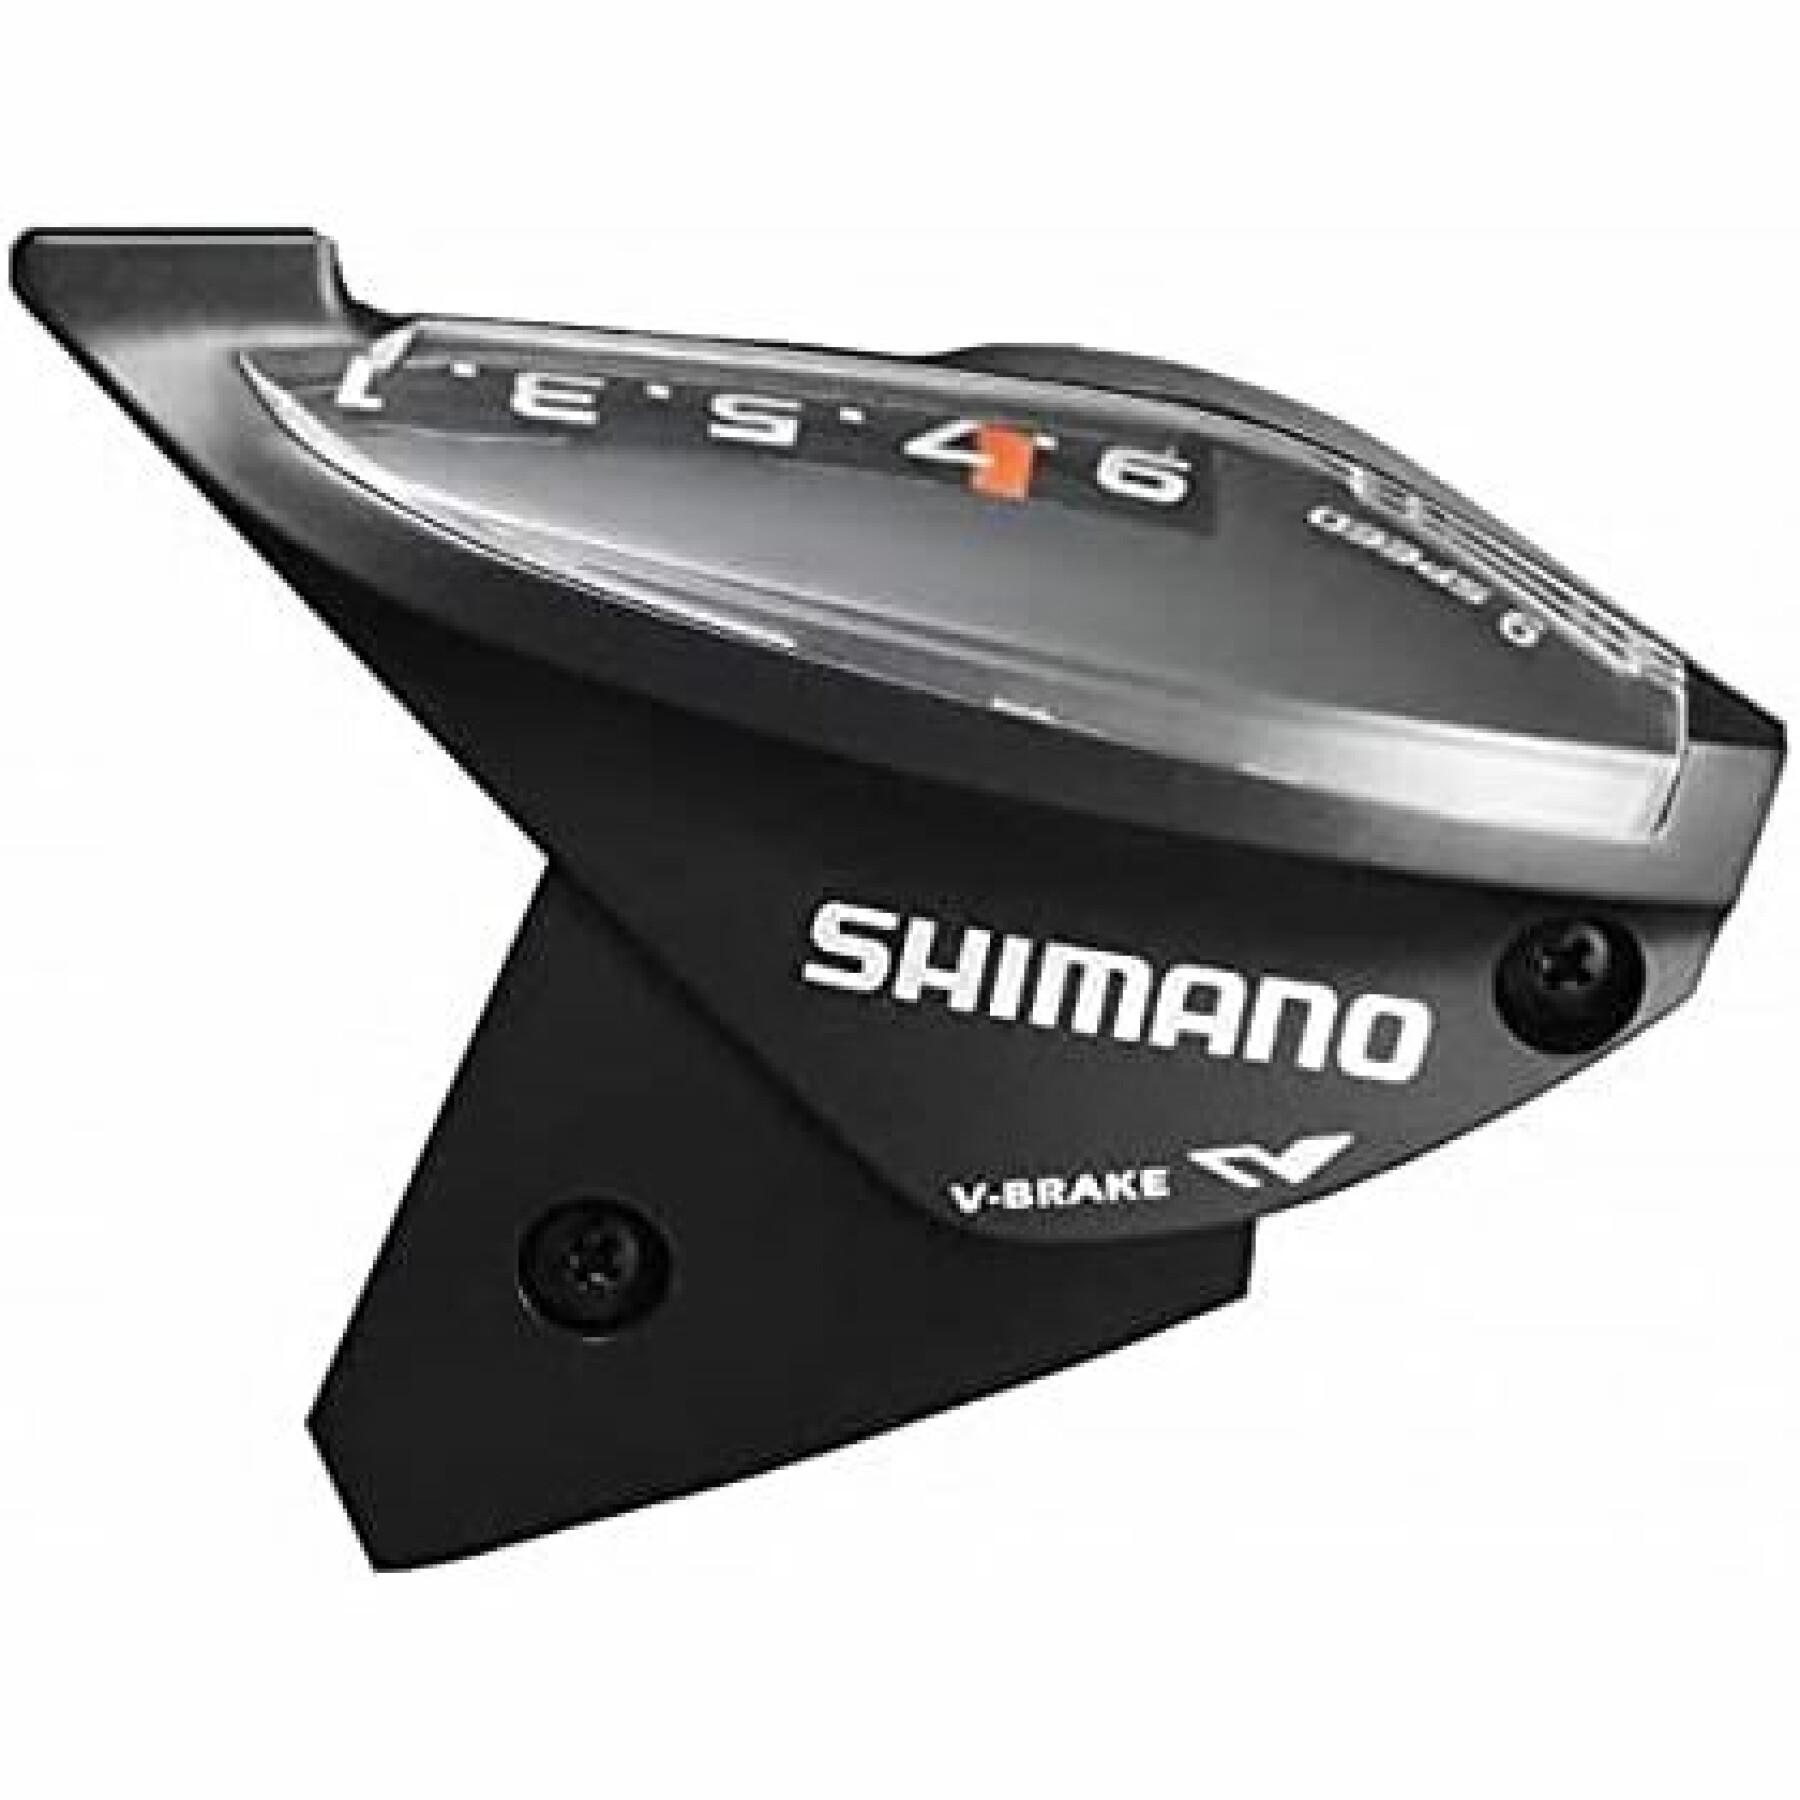 Pokrywa górna i śruby mocujące (m3 x 5) Shimano ST-EF510-9R2A